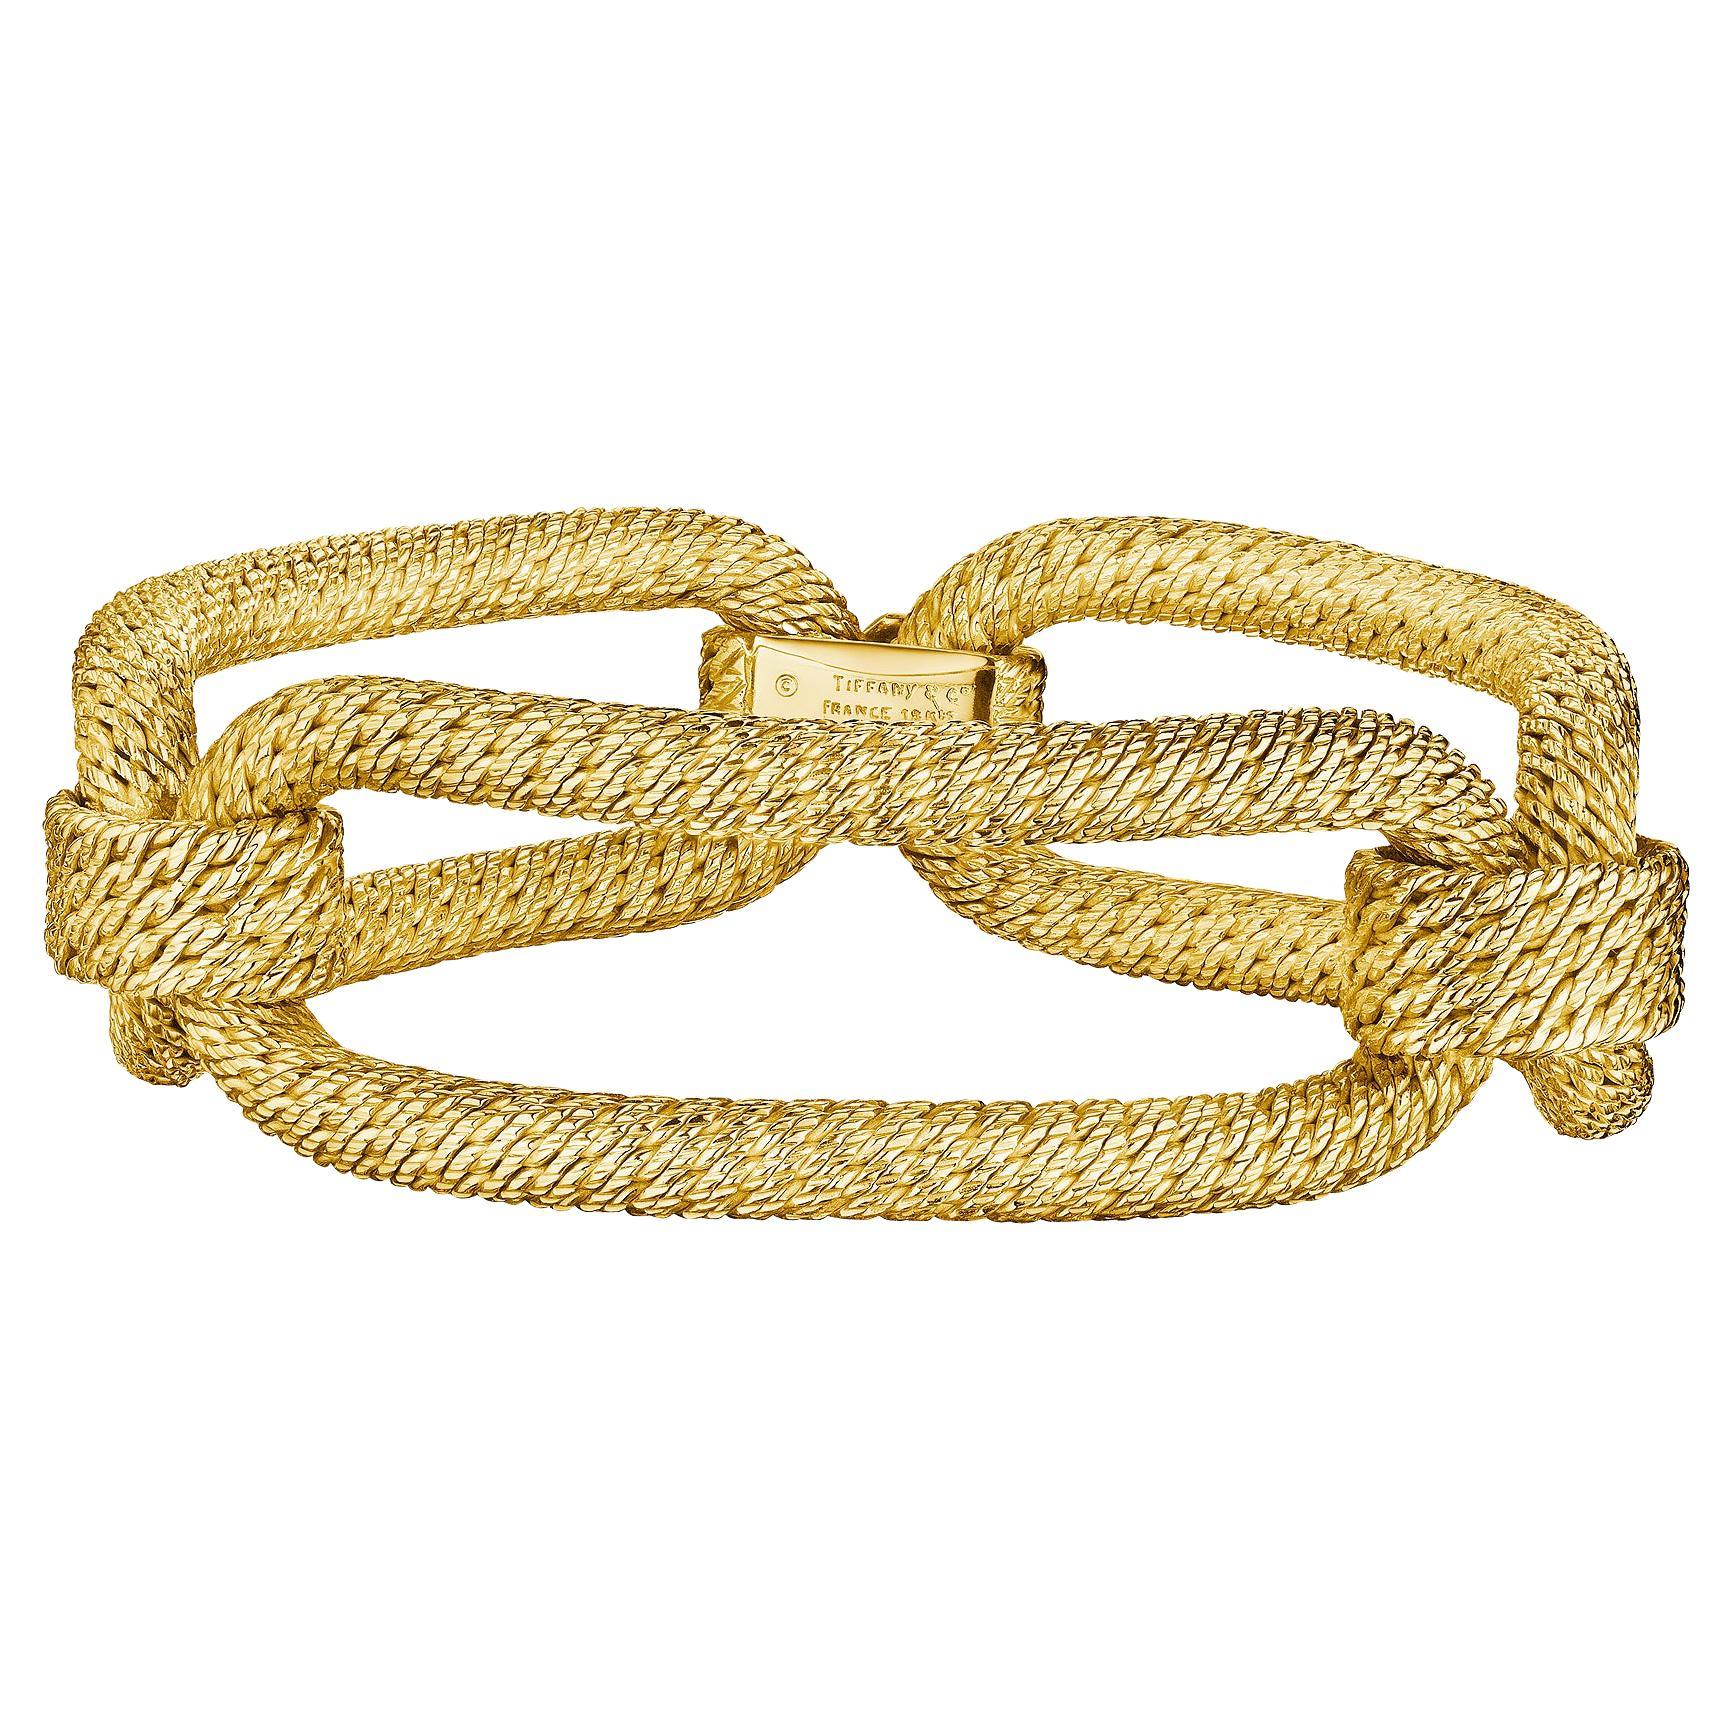 Tiffany & Co. Paris George L'Enfant Modernist Textured Gold Long Link Bracelet